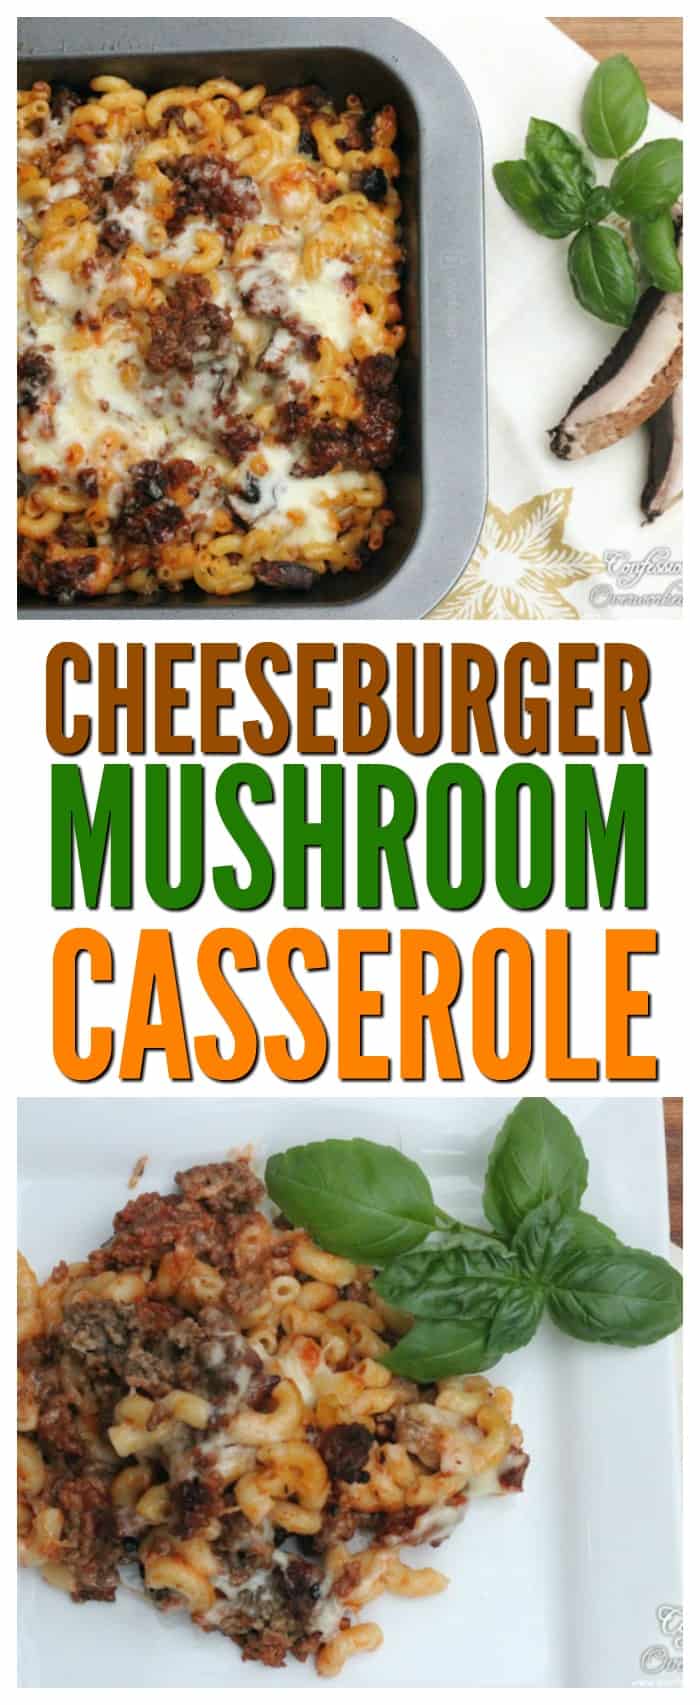 Easy Dinner Recipe - Cheeseburger Mushroom Pasta Casserole